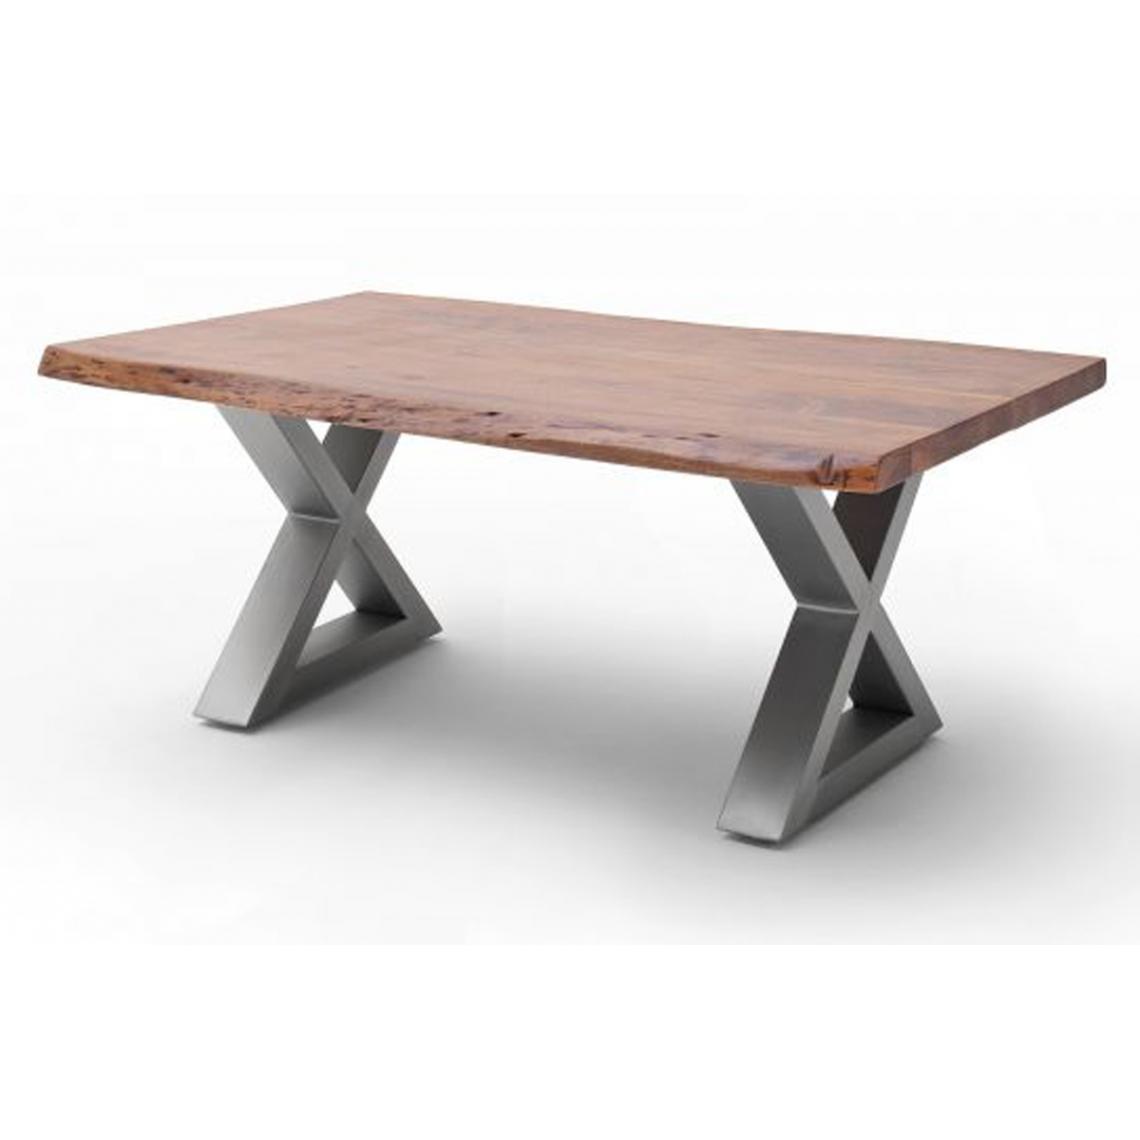 Pegane - Table basse en bois d'acacia massif noyer / acier inoxydable - L.110 x H.45 x P.70 cm - Tables basses